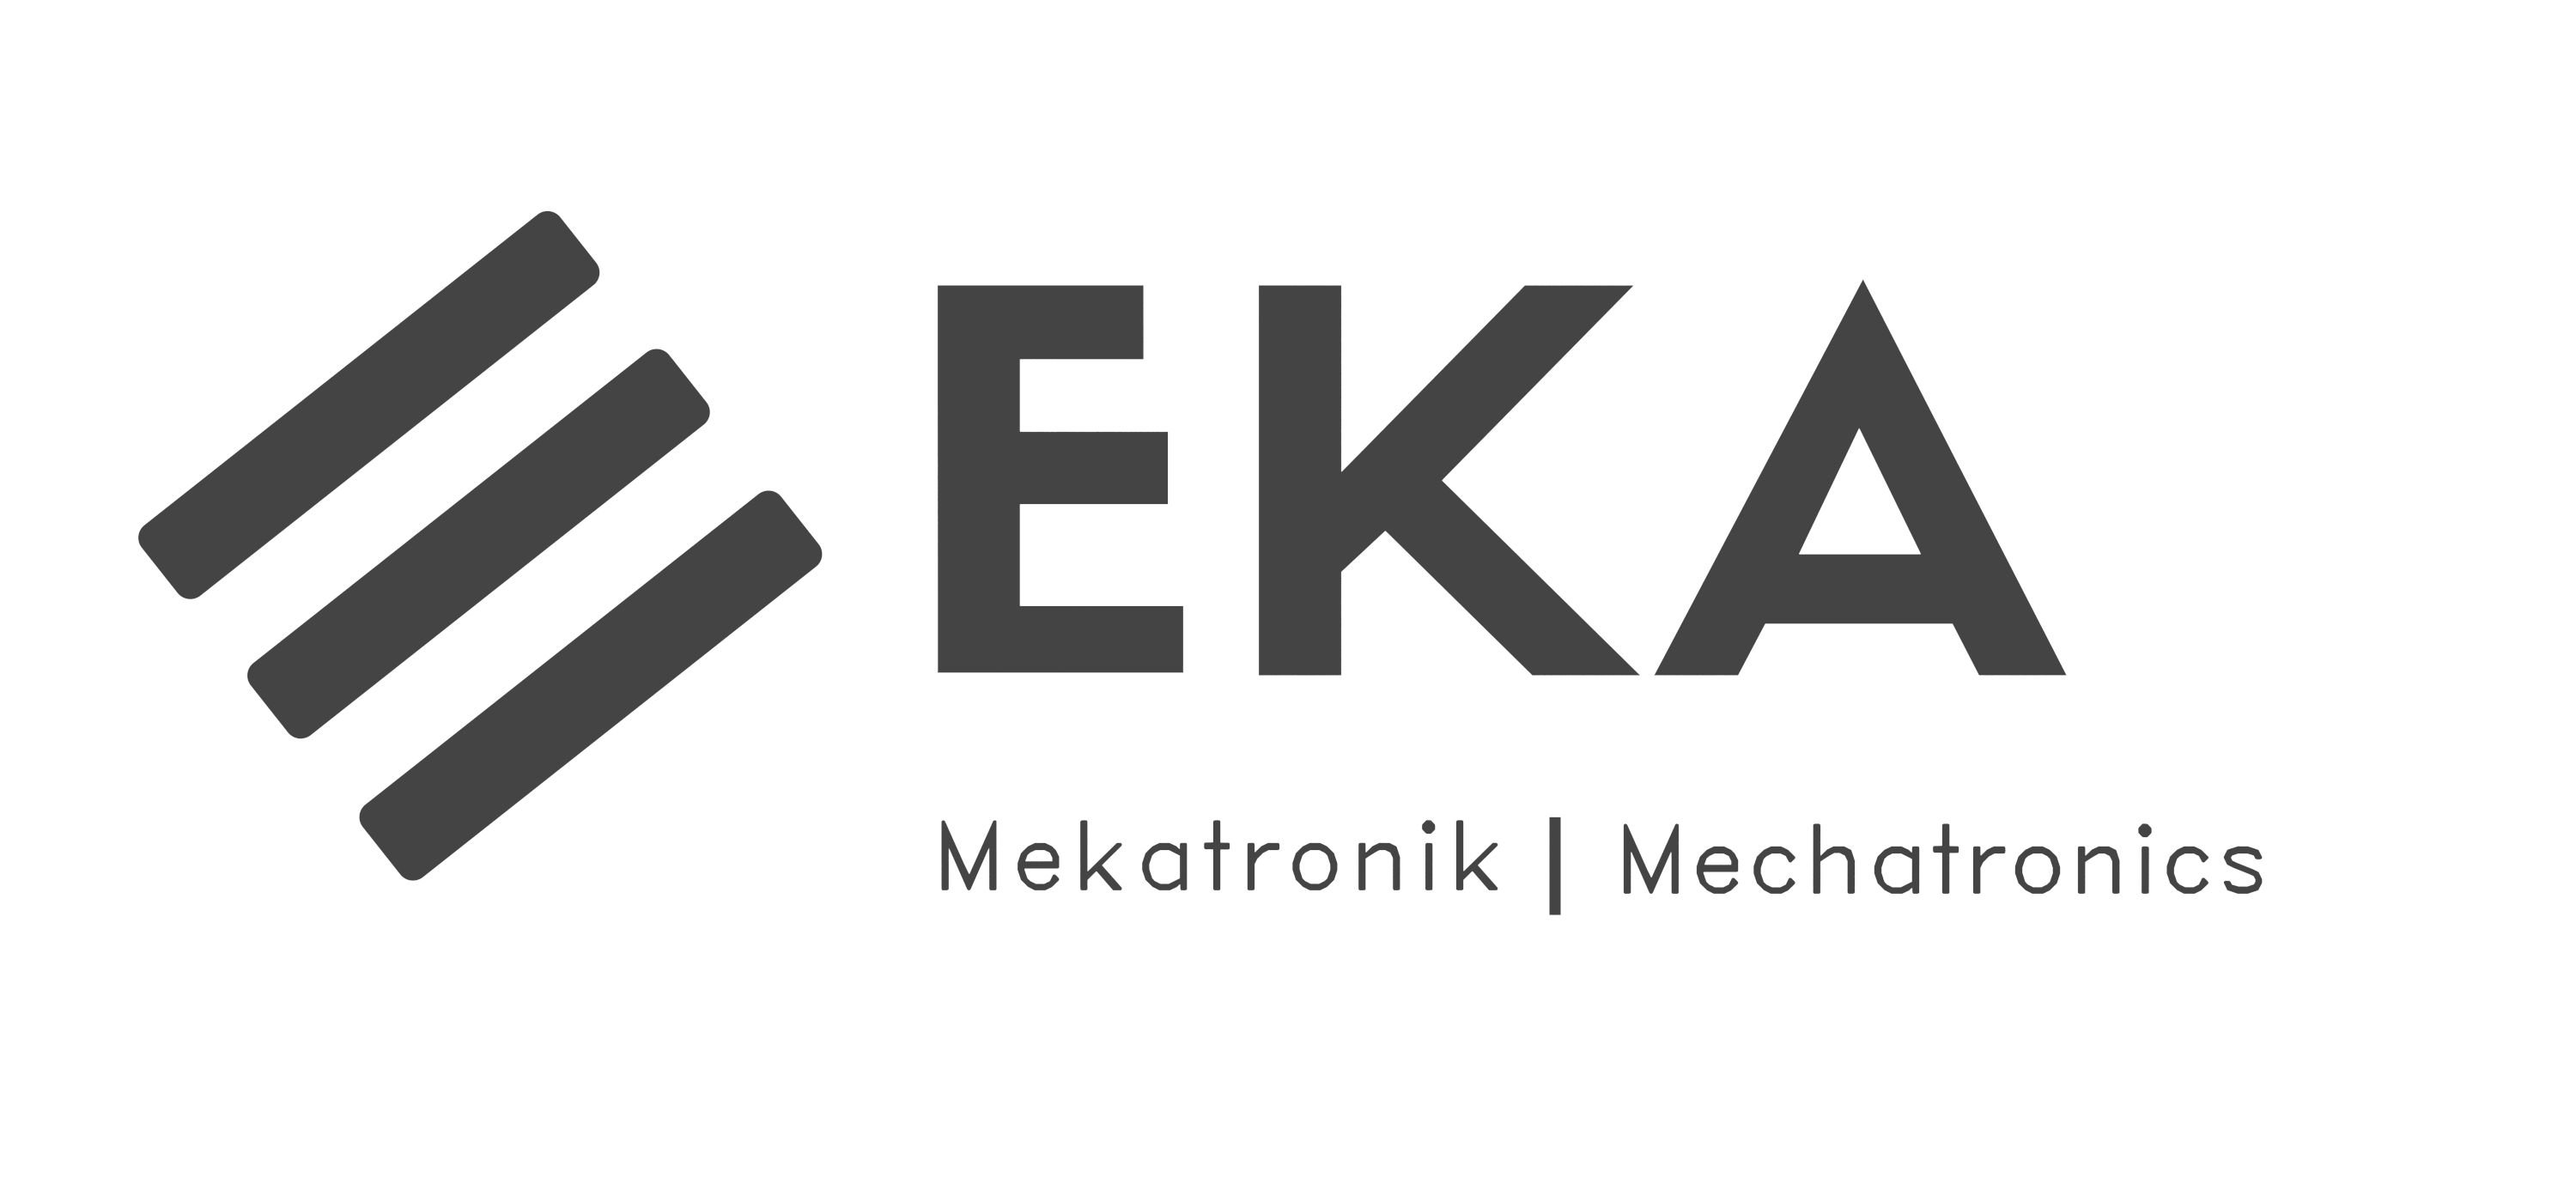 Eka Mekatronik